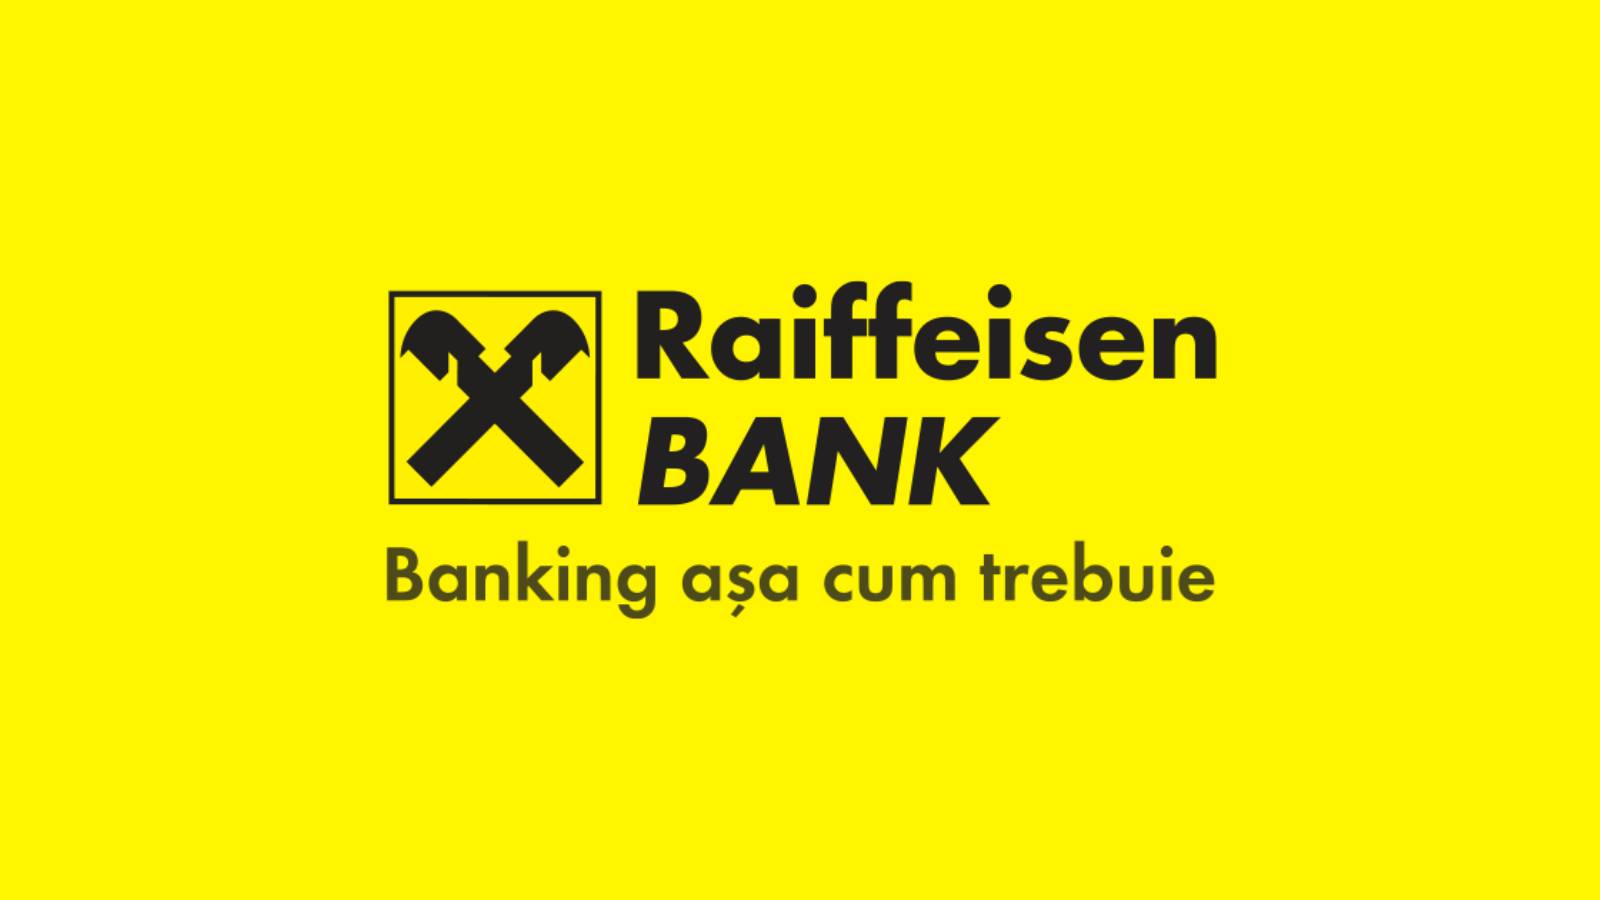 Raiffeisen Bank Ofera GRATUIT Clientilor Informarea Publicata Astazi